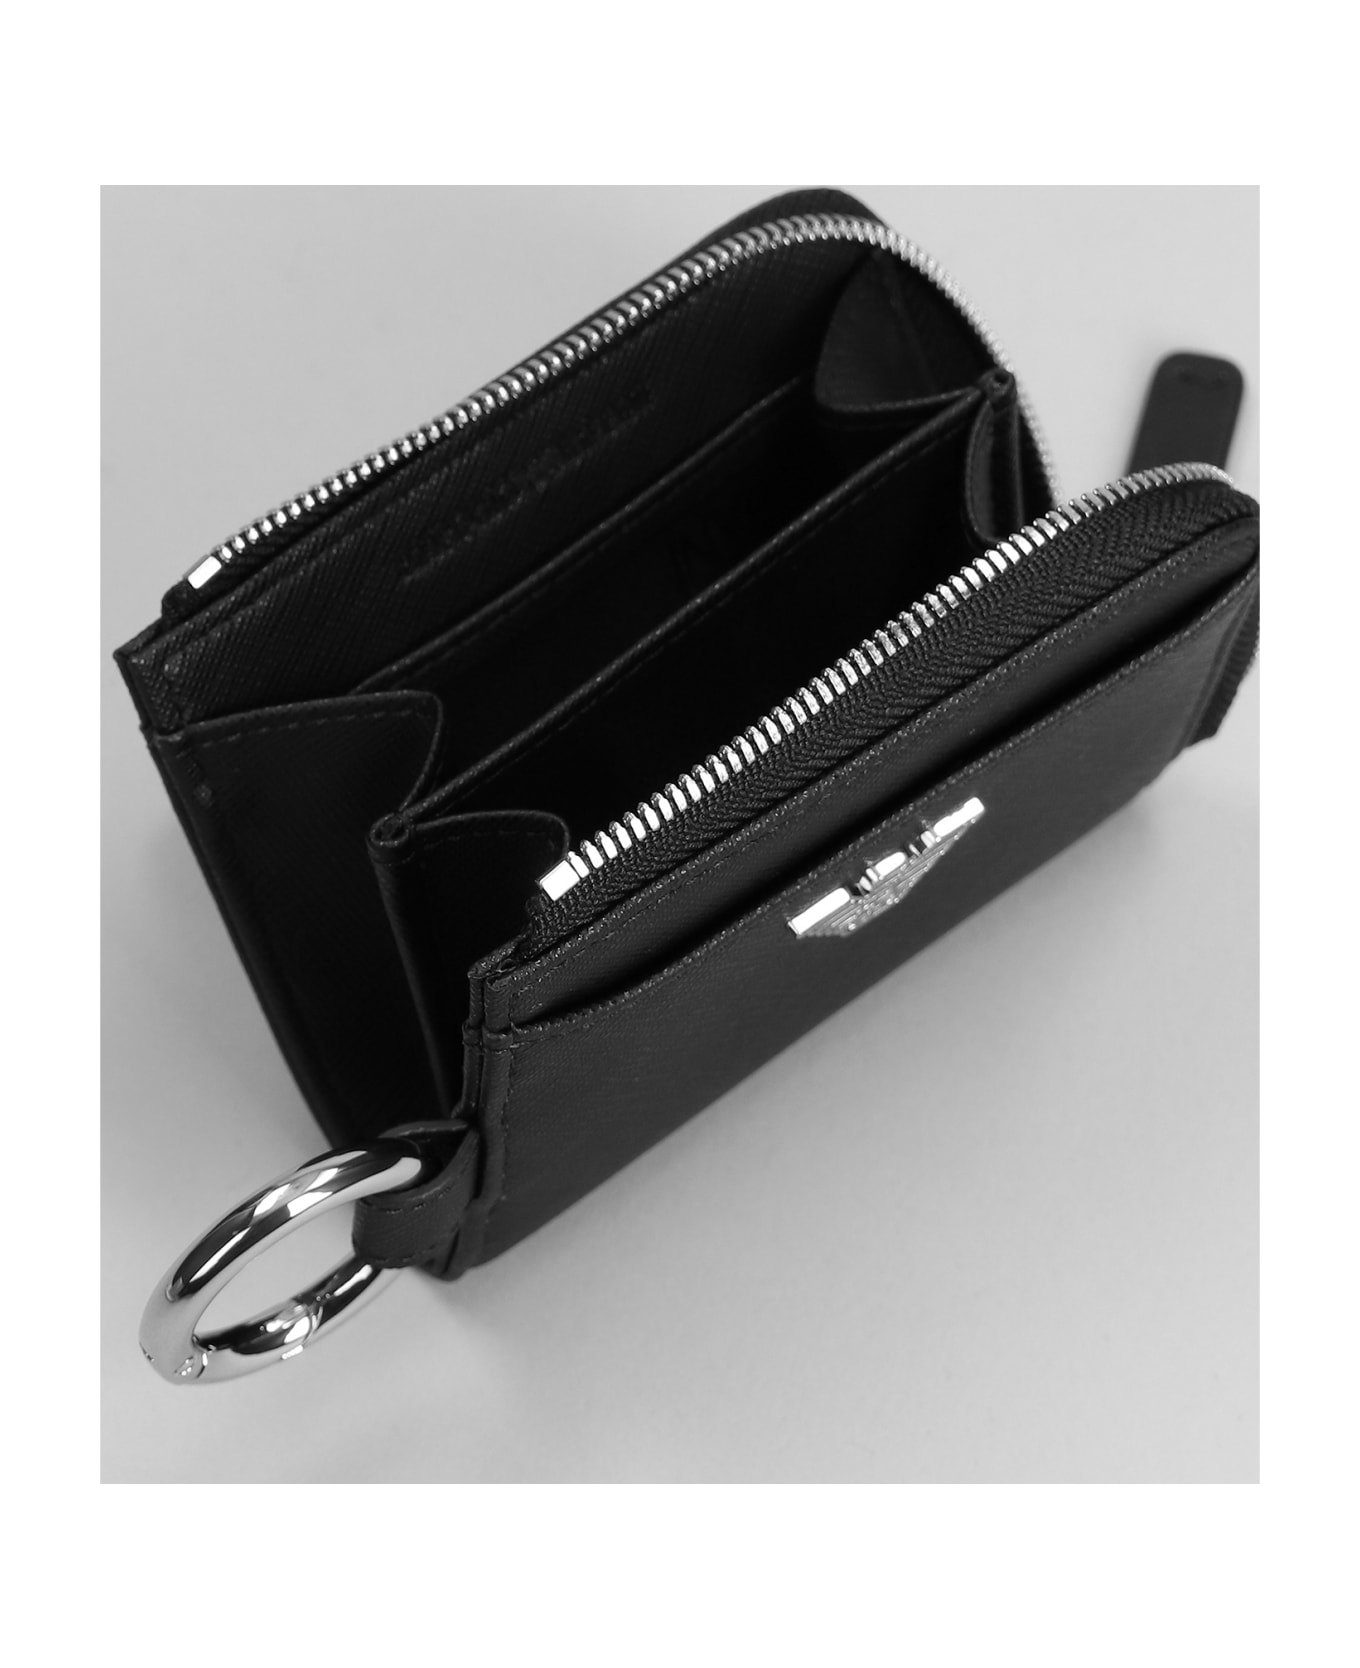 Emporio Armani Wallet With Keyring - black